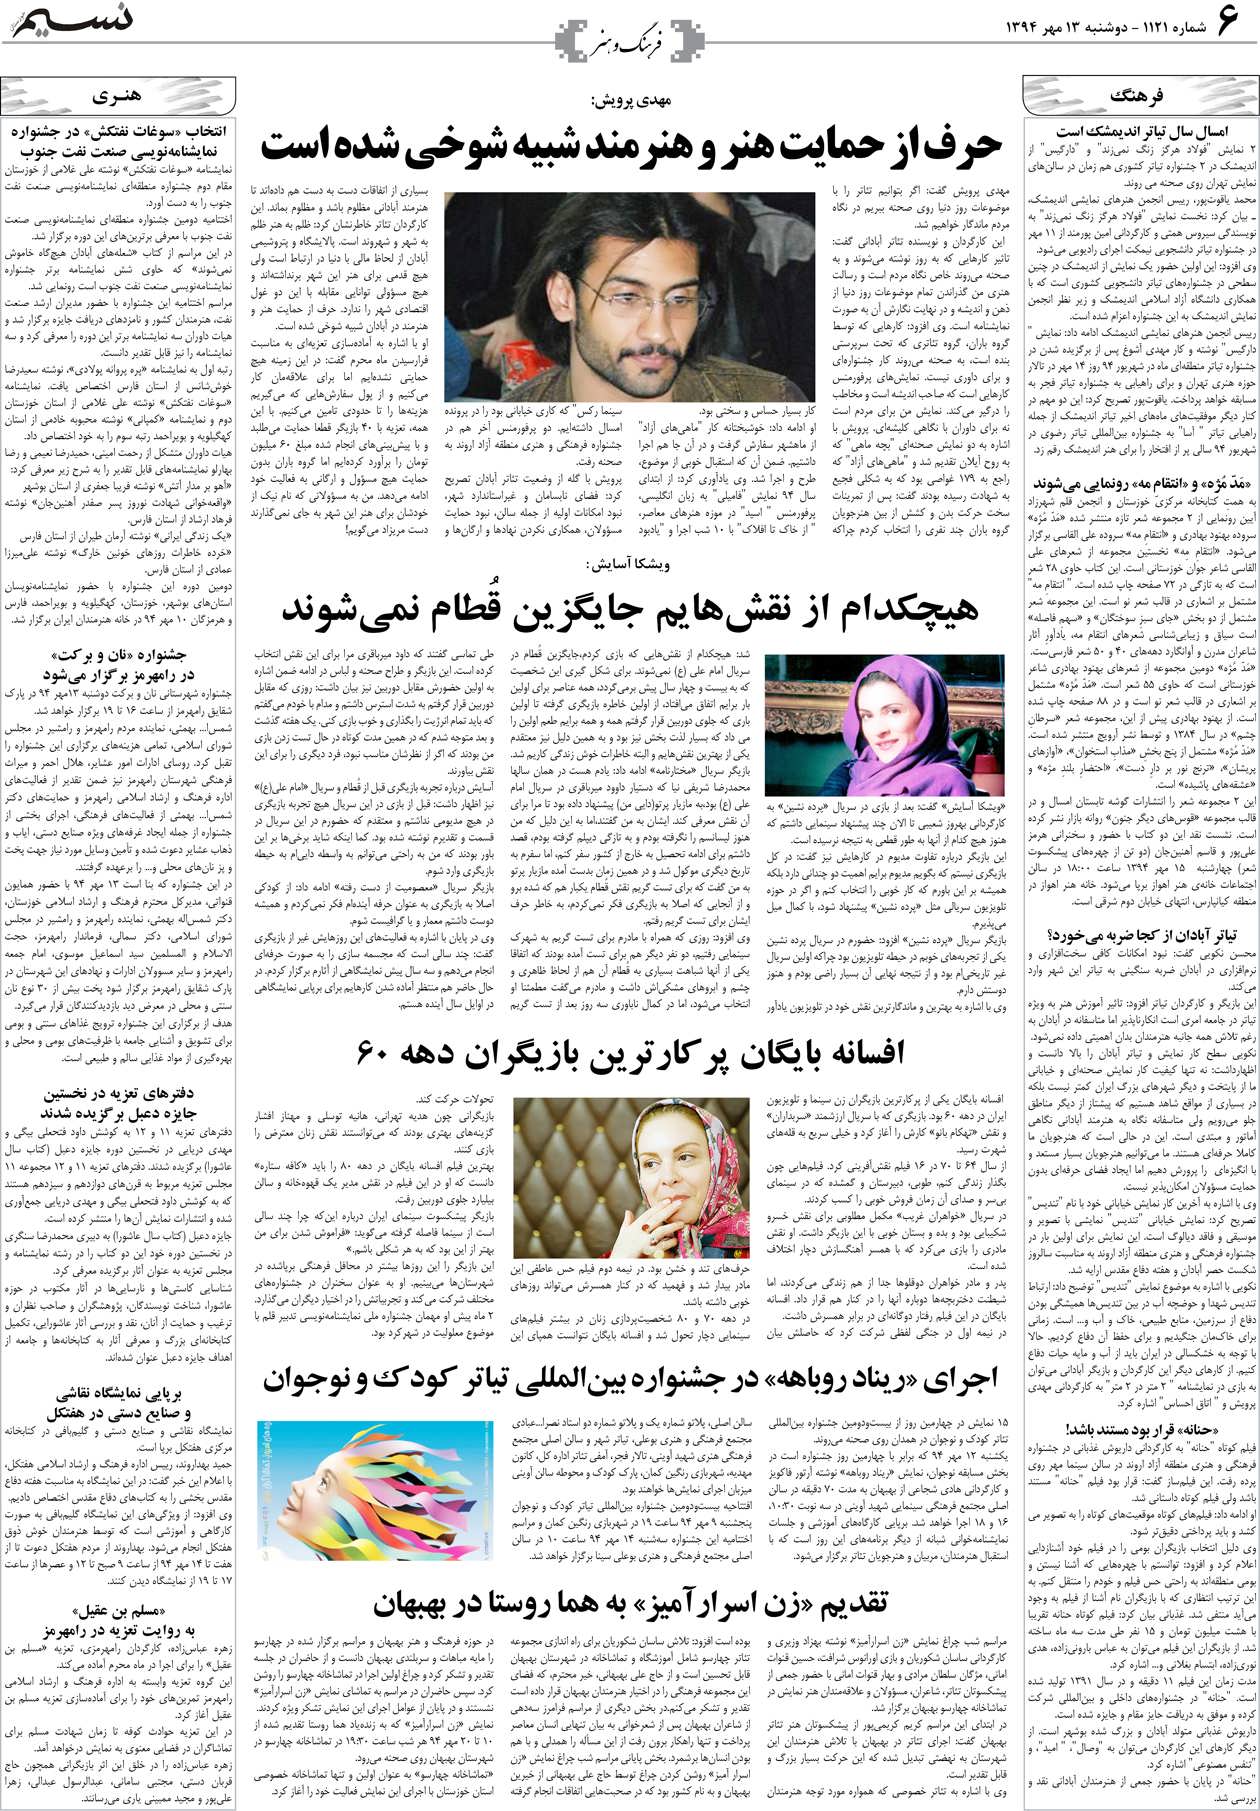 صفحه فرهنگ و هنر روزنامه نسیم شماره 1121